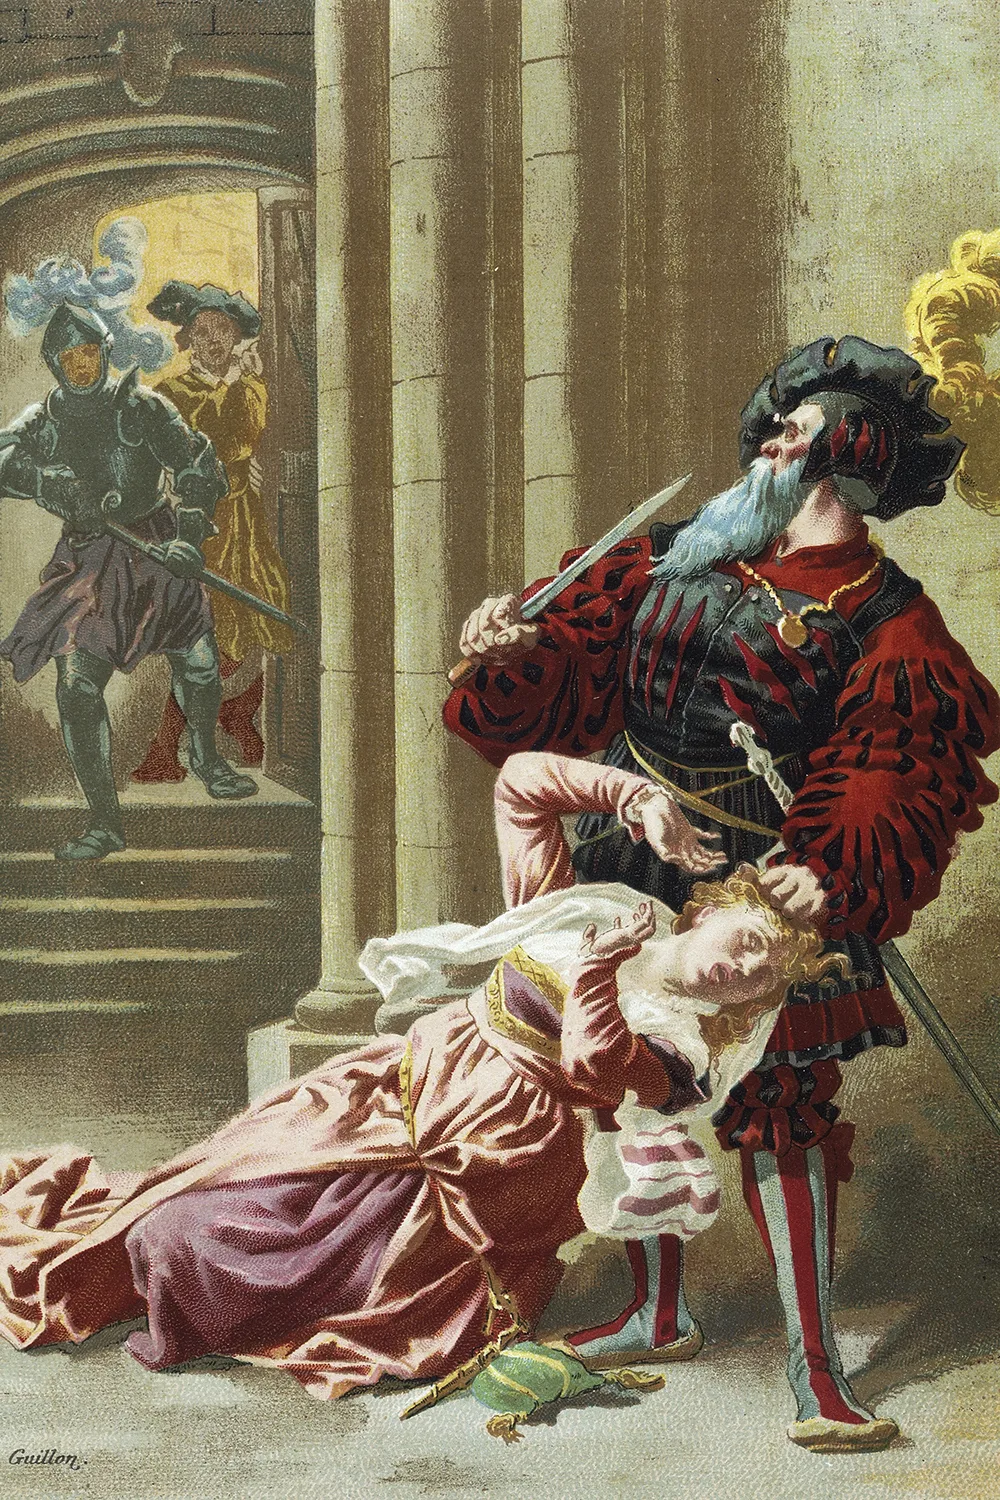 لوحة "بلوبيرد" للرسام غيون لطبعة من روايات تشارلز بيرو نُشرت في باريس في أواخر القرن التاسع عشر.